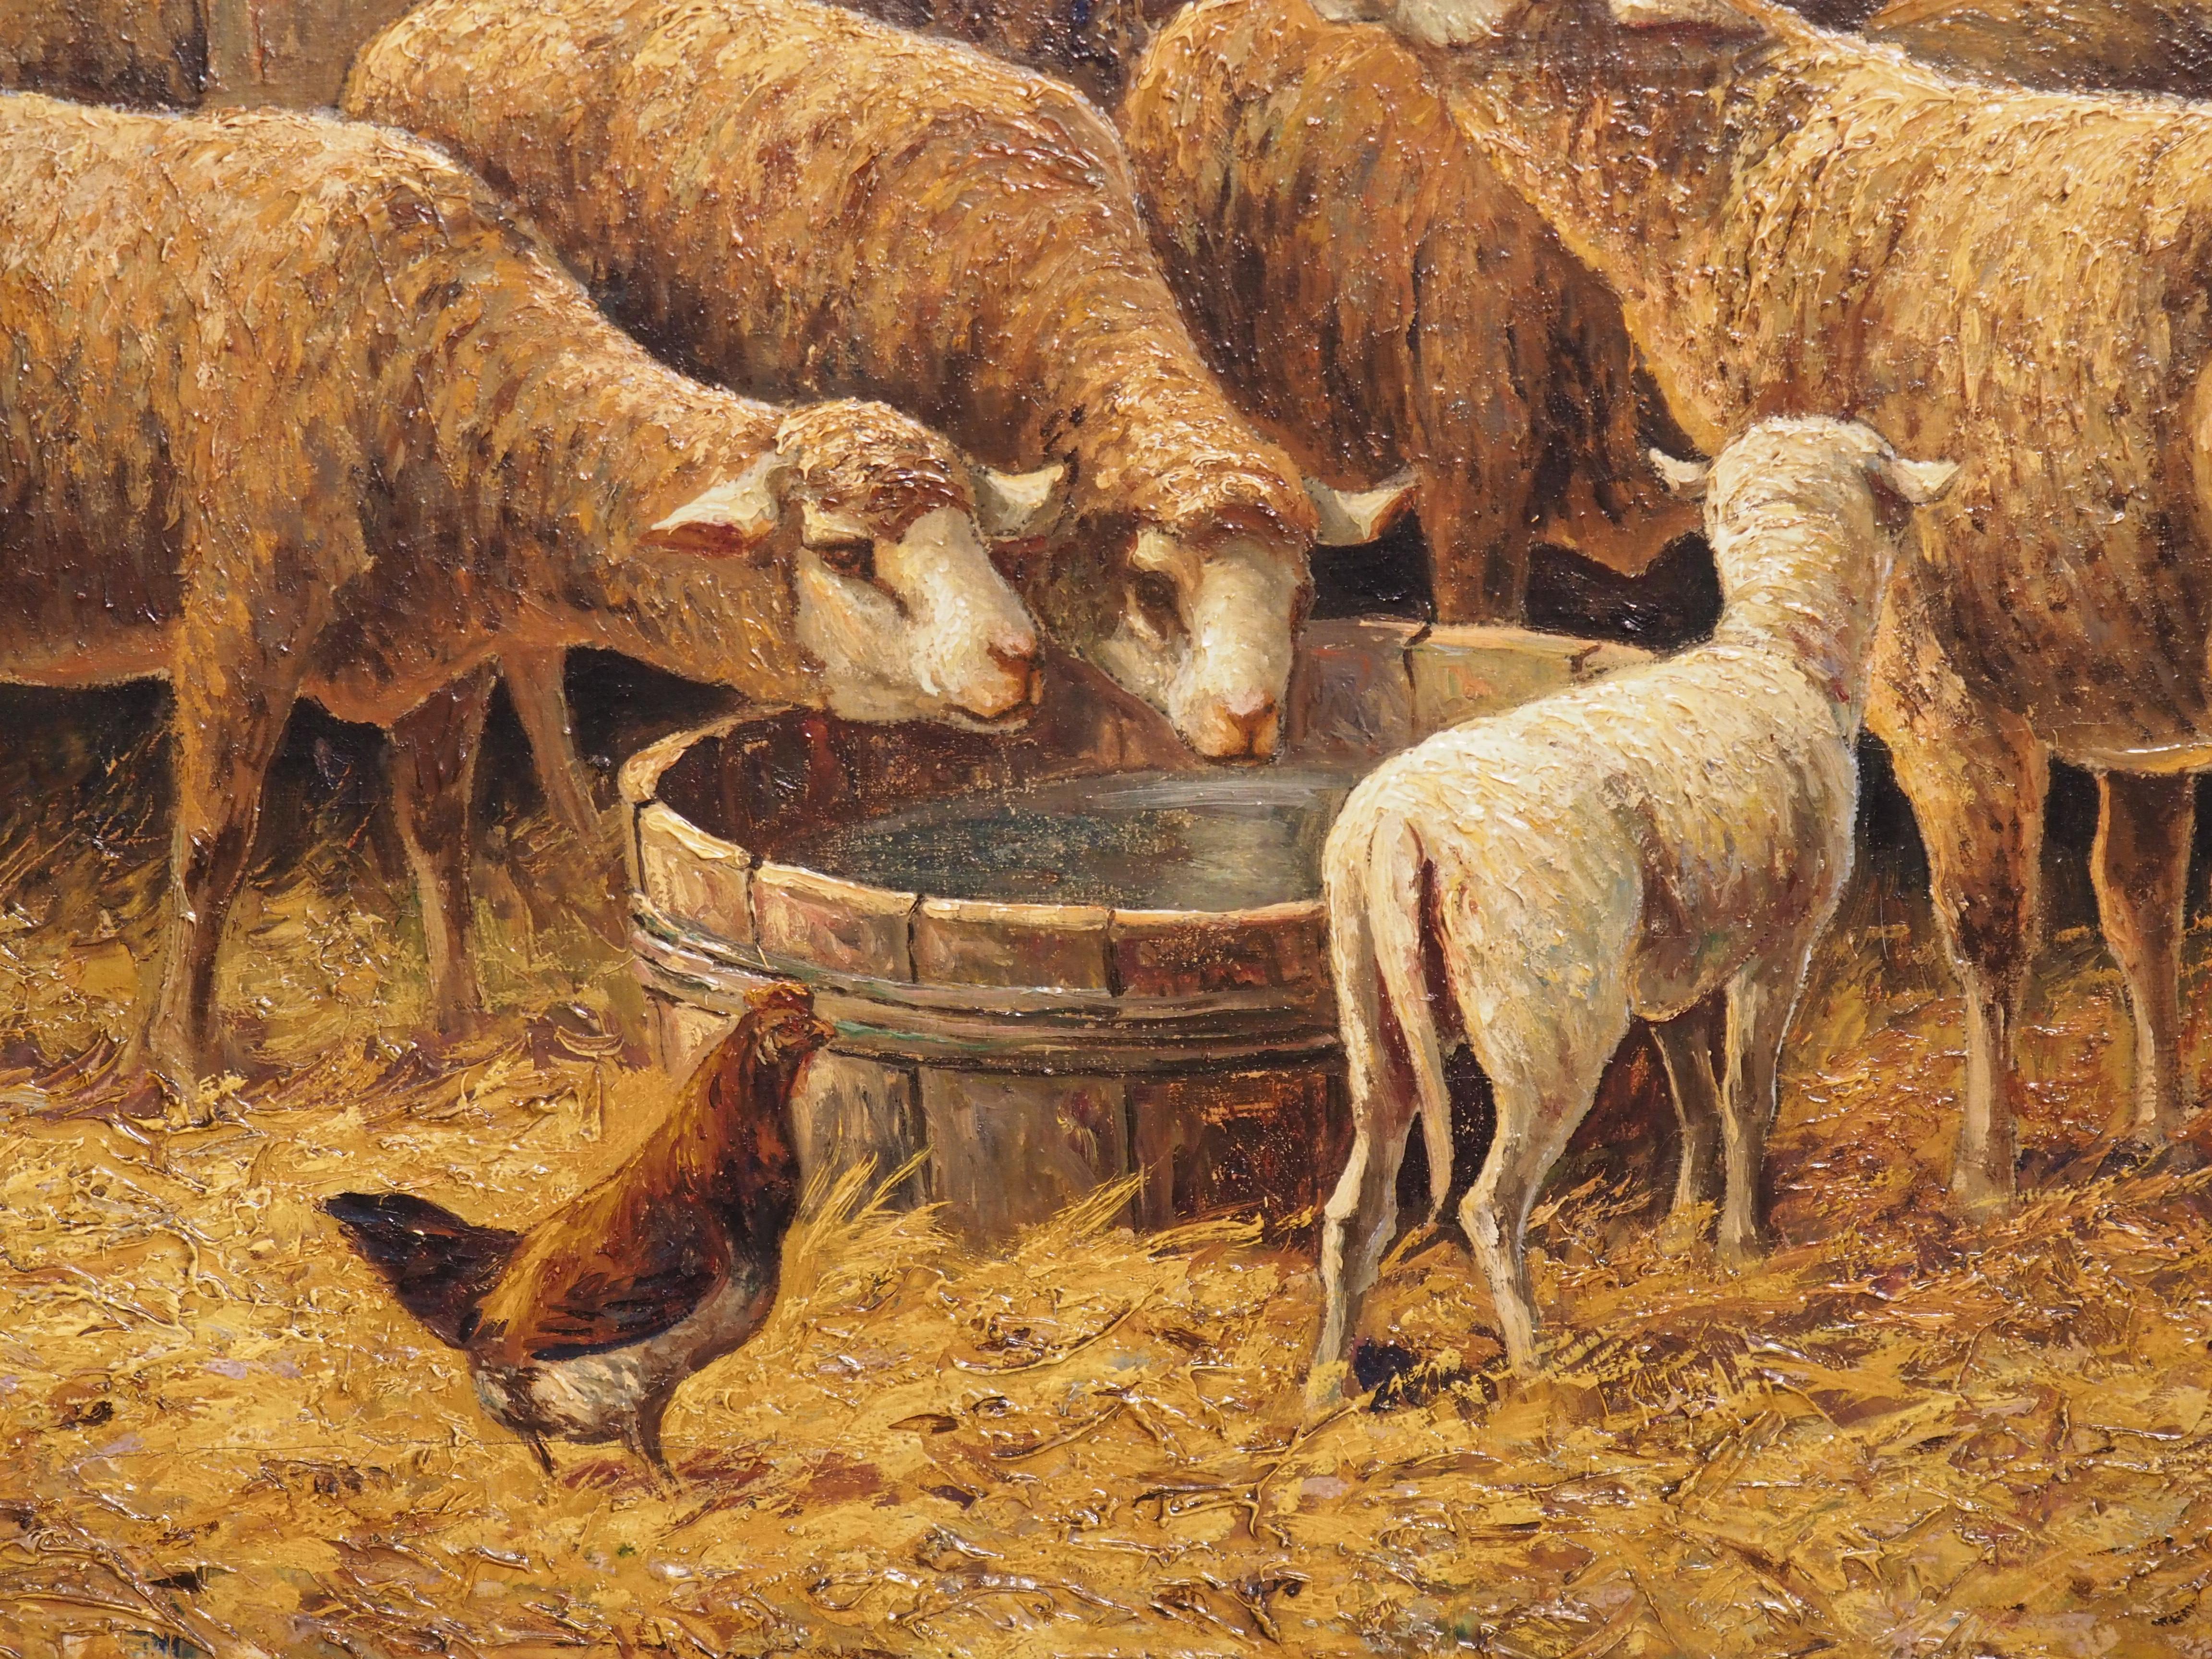 Dieses Gemälde in Öl auf Leinwand trägt den Titel In the Sheepfold und ist vom Künstler in der linken unteren Ecke signiert (